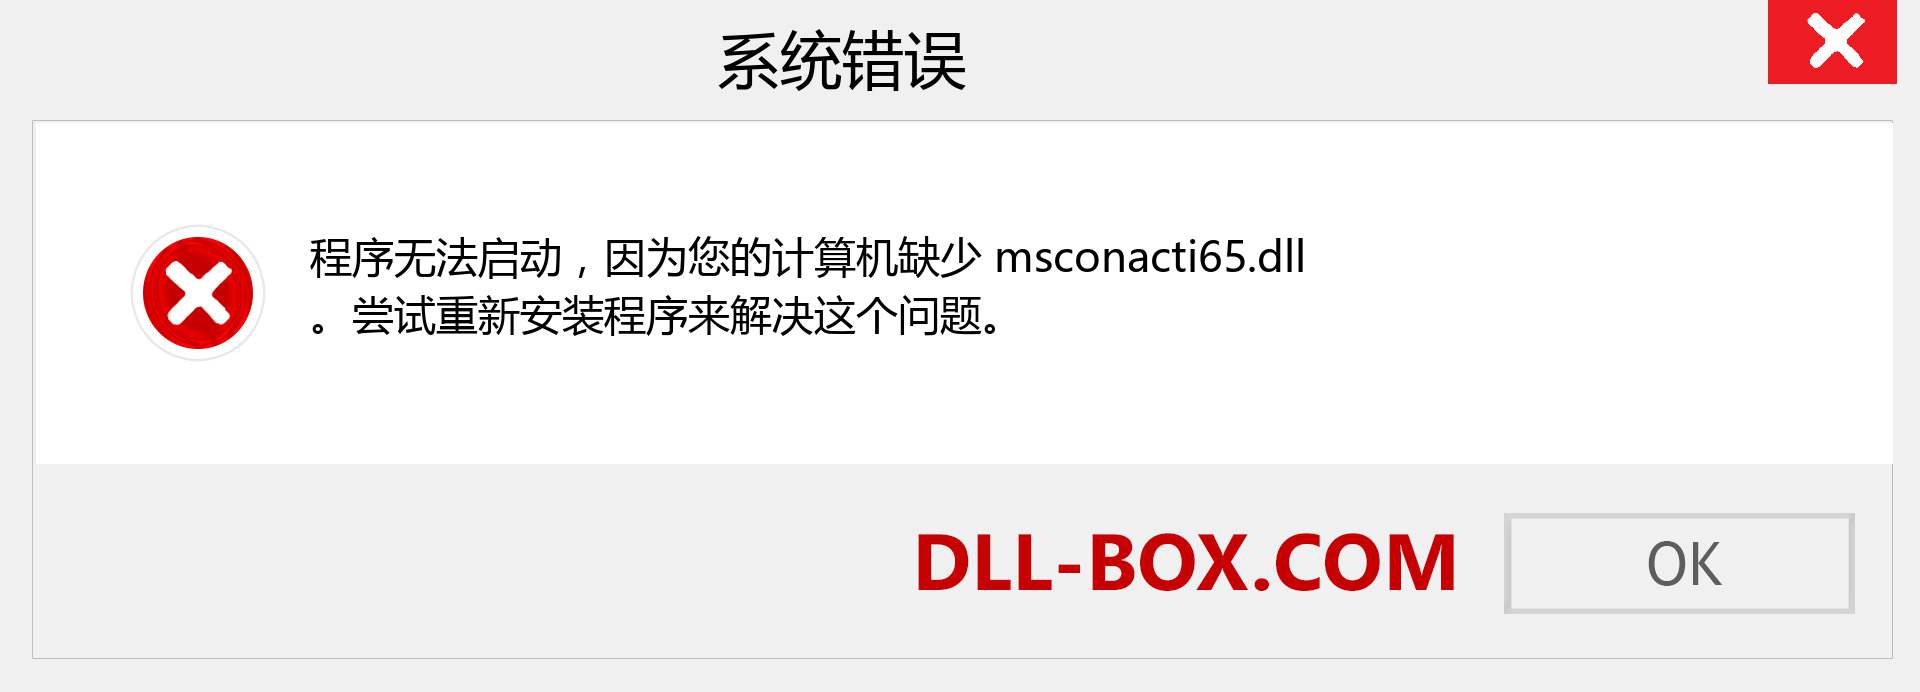 msconacti65.dll 文件丢失？。 适用于 Windows 7、8、10 的下载 - 修复 Windows、照片、图像上的 msconacti65 dll 丢失错误